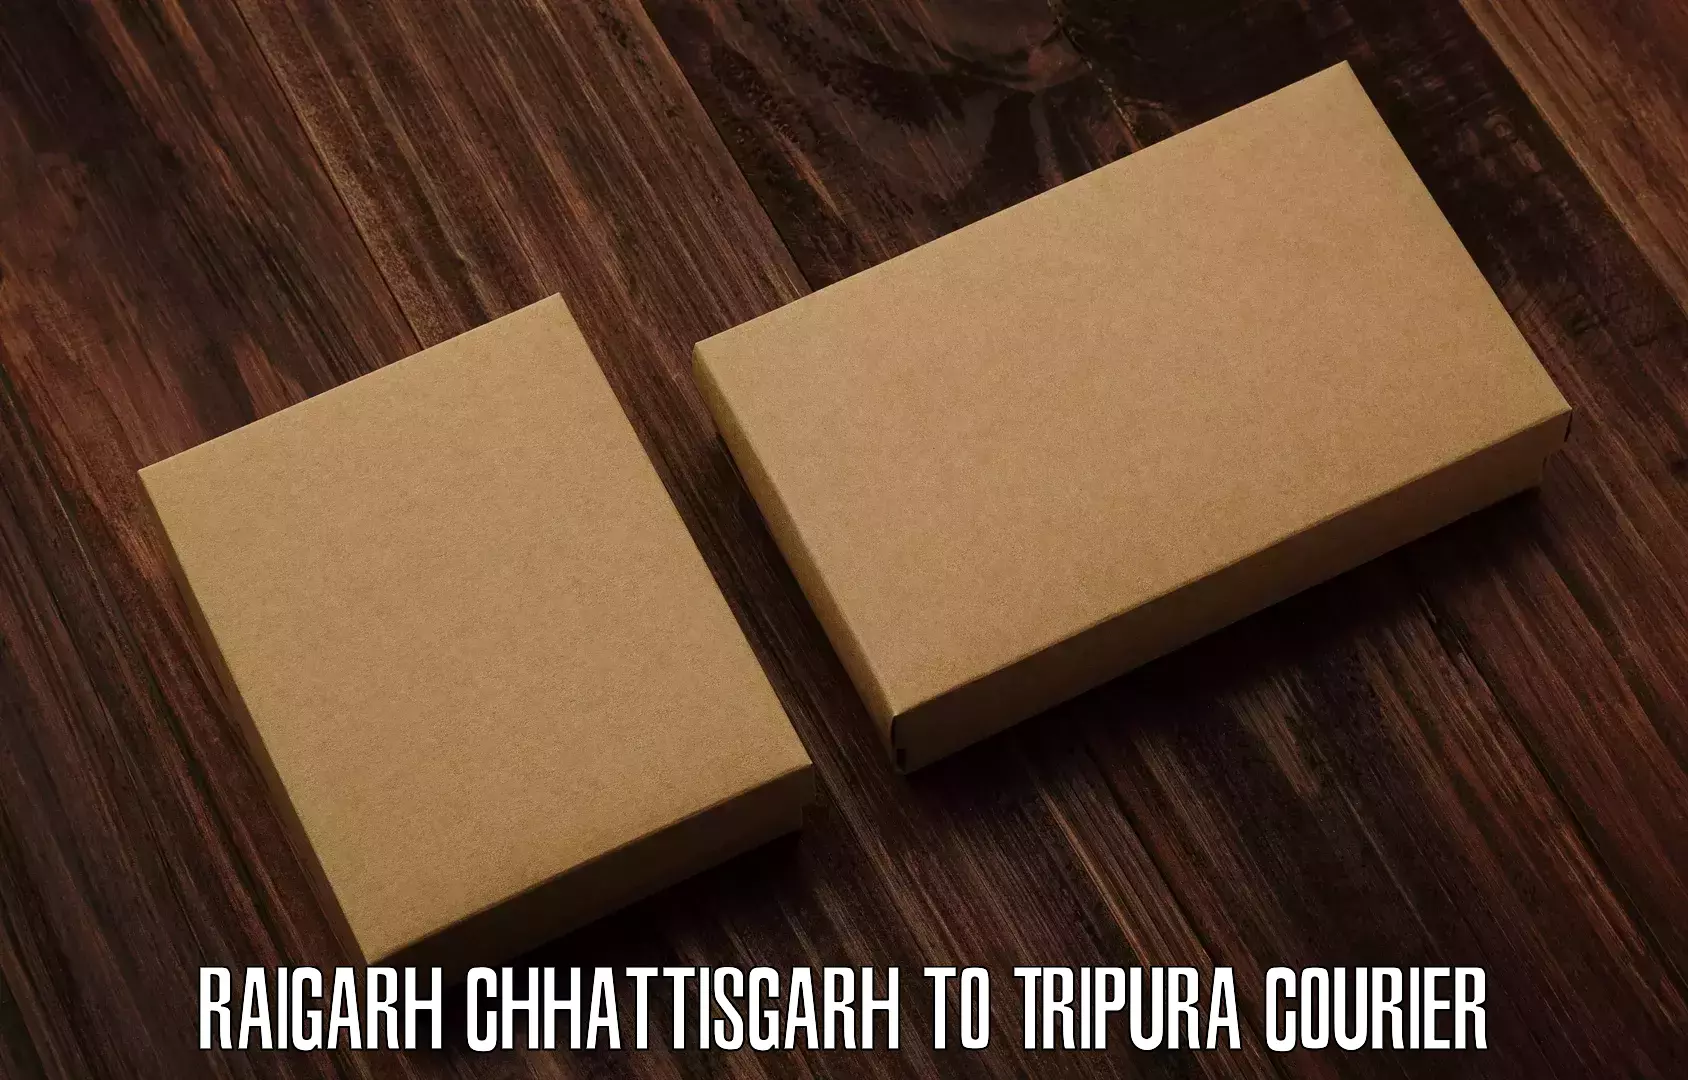 Global logistics network Raigarh Chhattisgarh to Bishalgarh